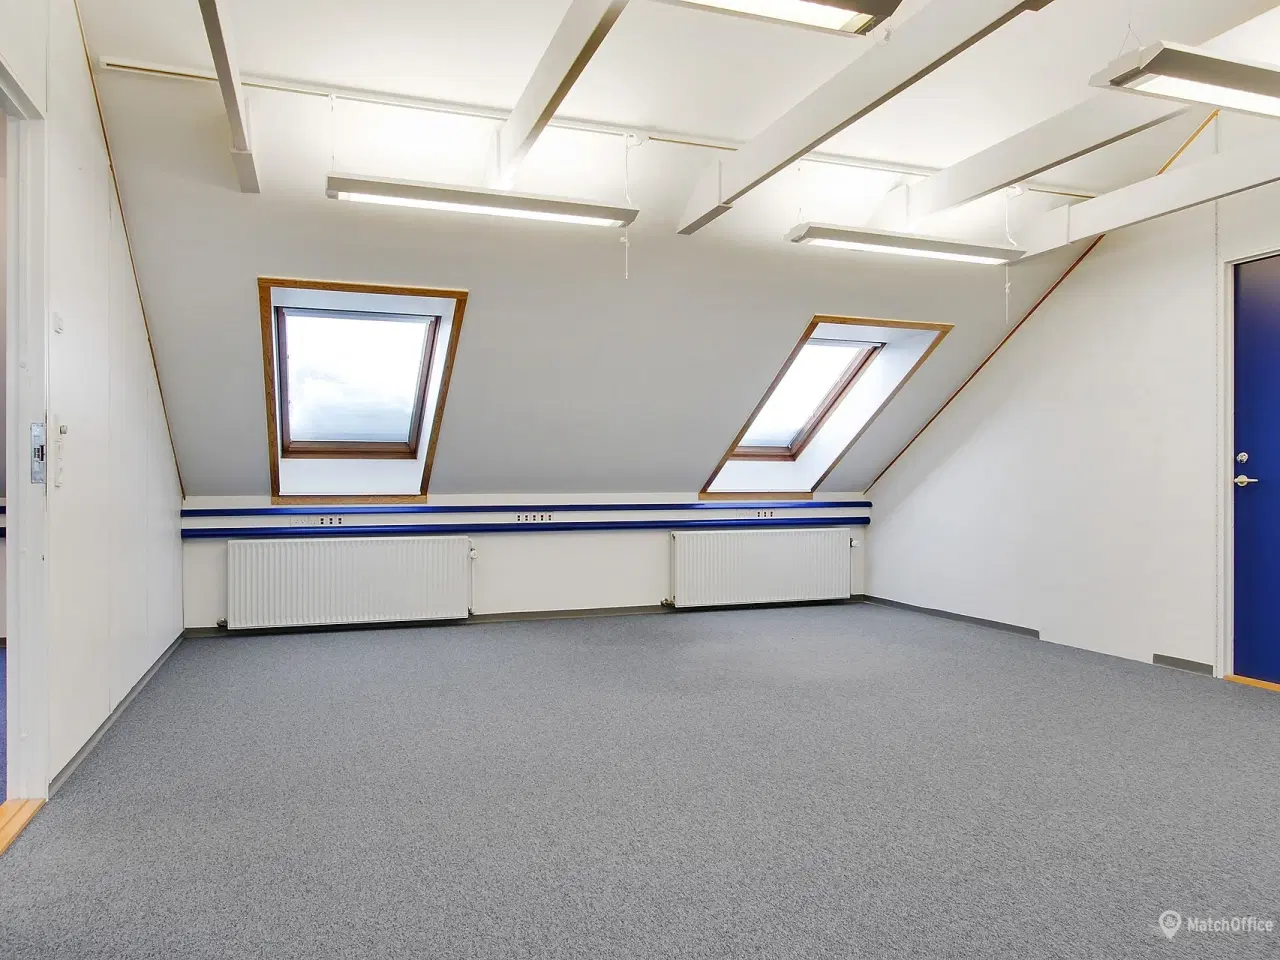 Billede 7 - Kontor lokaler til leje i Albertslund